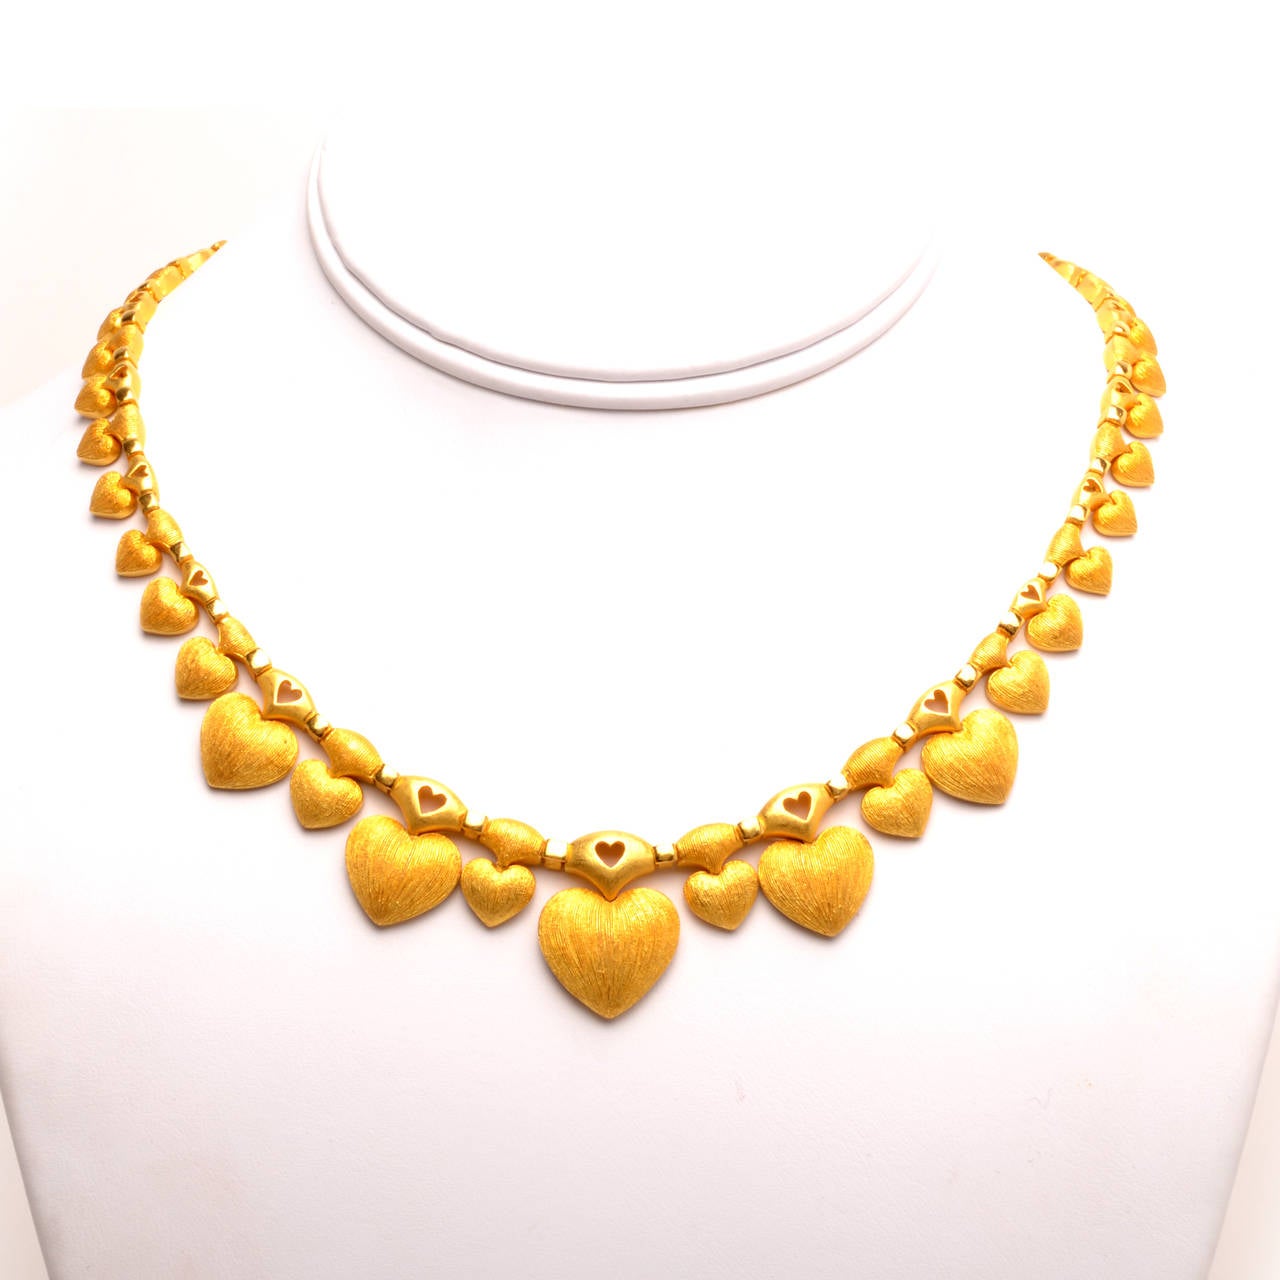 Women's Heart Motif Gold Necklace